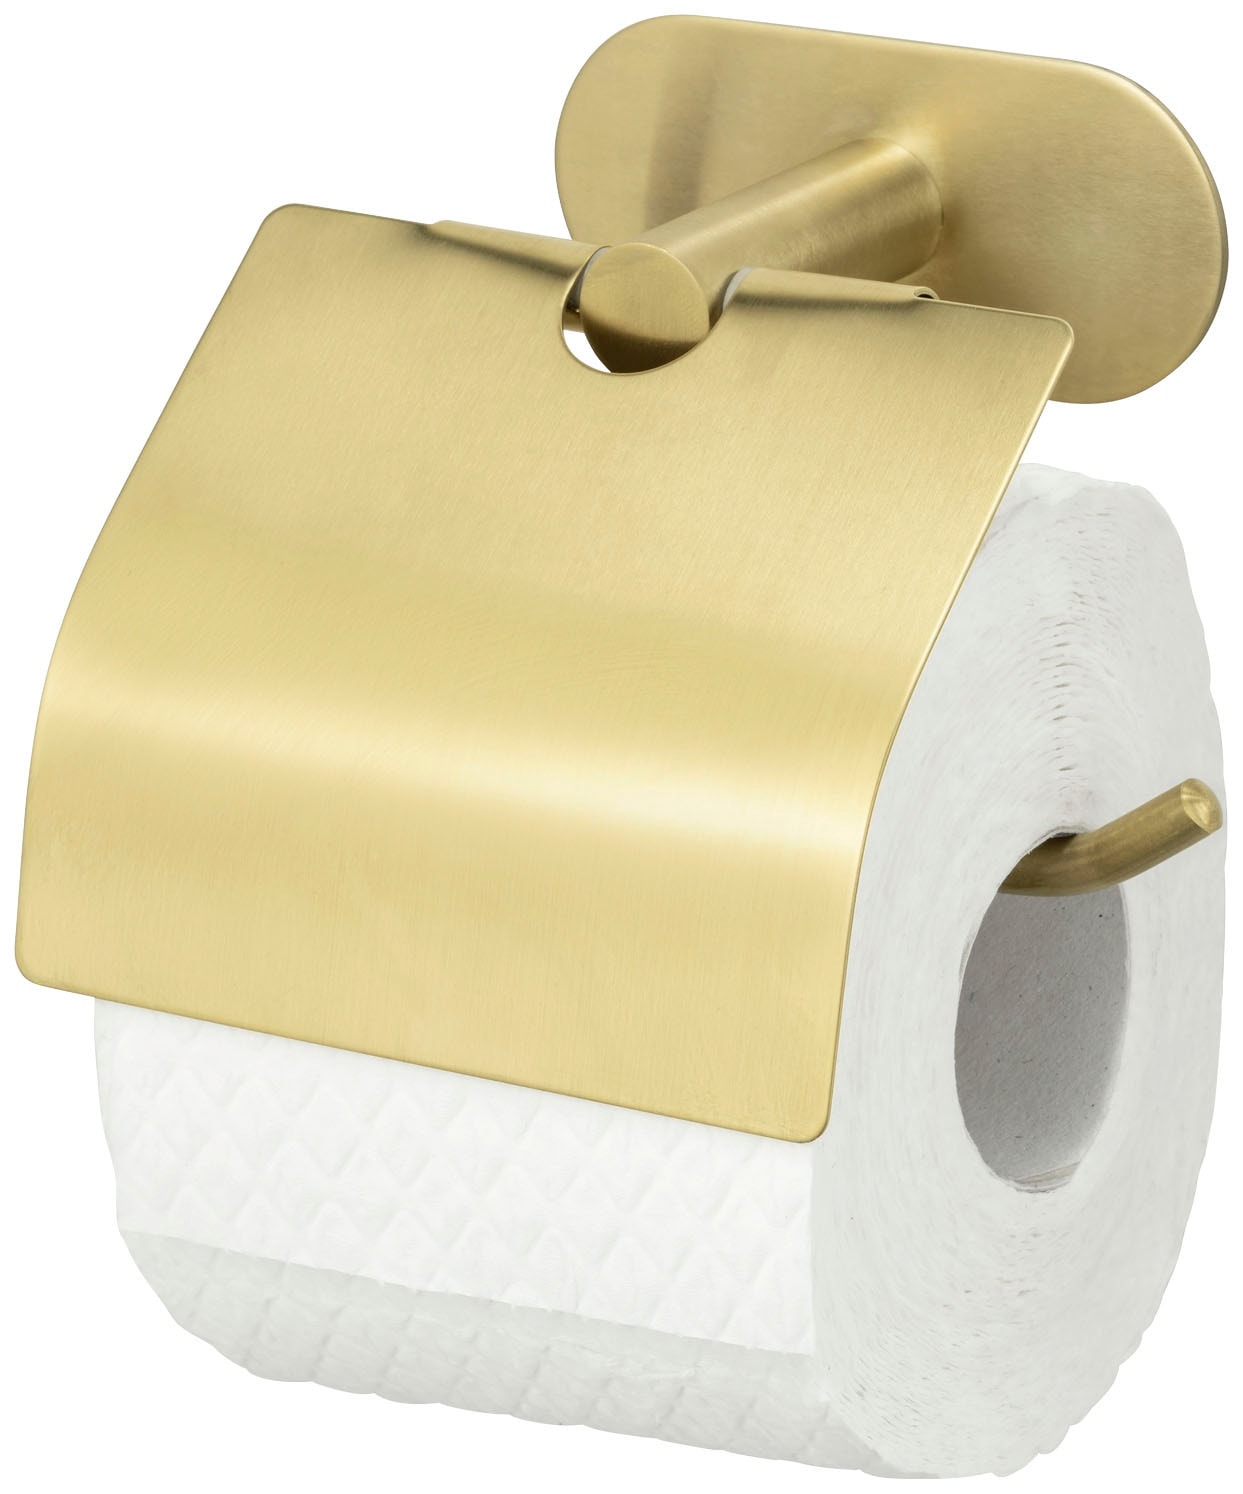 WENKO Toilettenpapierhalter »Turbo-Loc®«, mit Deckel, Befestigen ohne Bohren  | BAUR